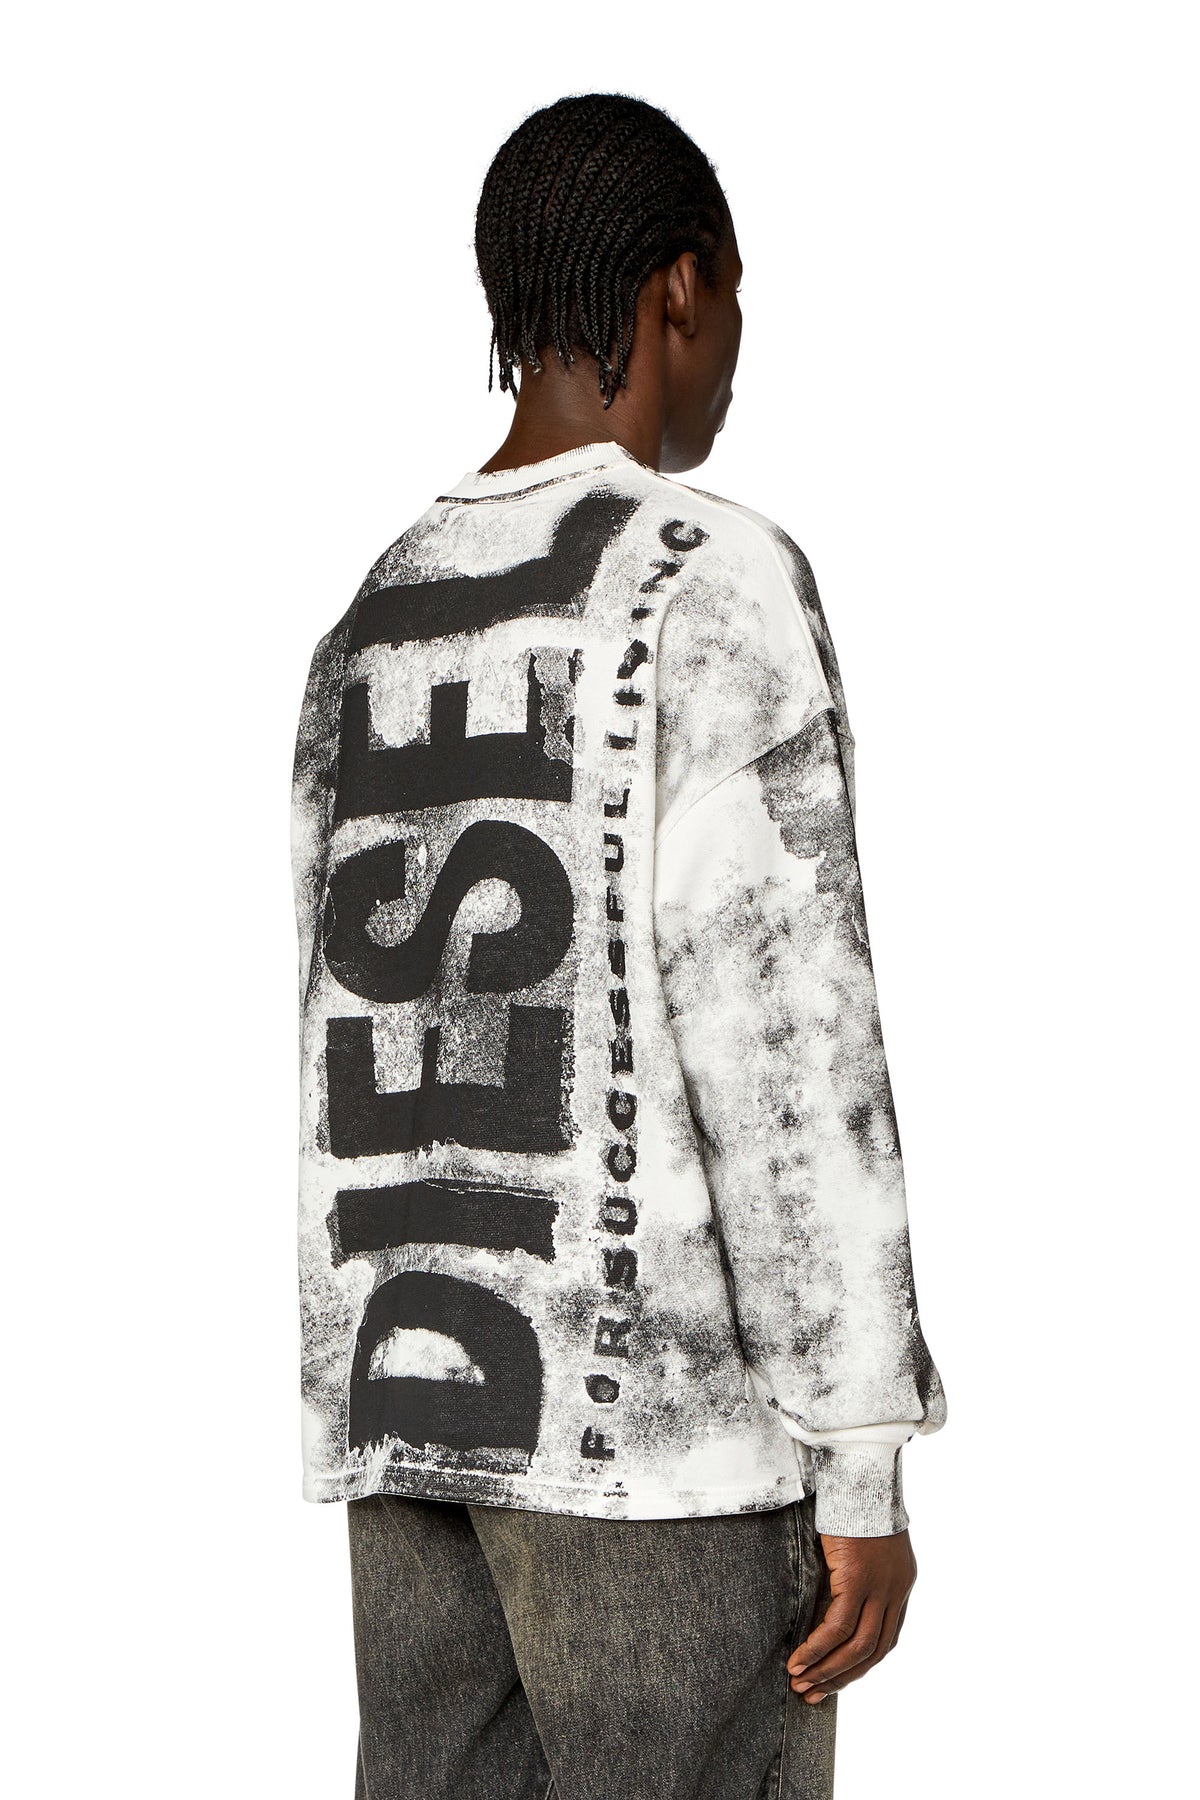 DIESEL S-Bunt-Bisc Sweater - Grey